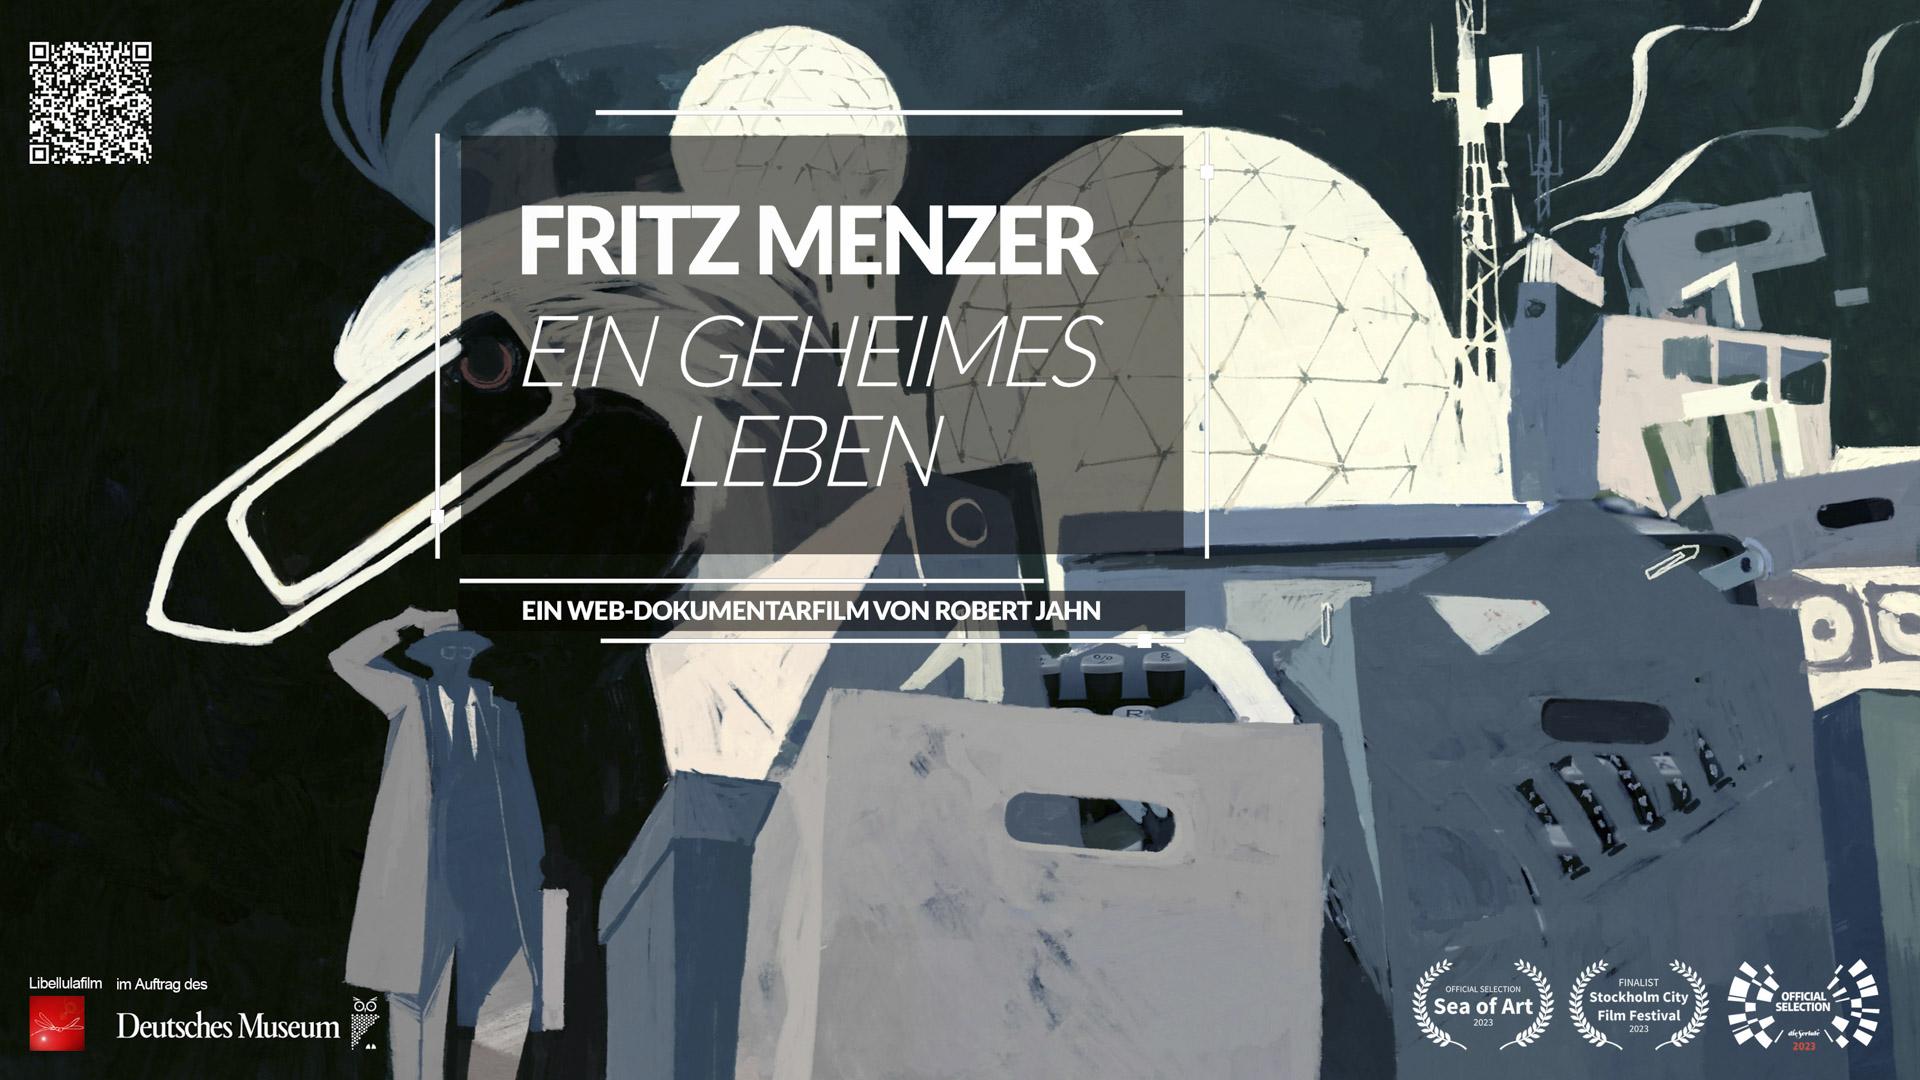 Fritz Menzer - A Secret Life